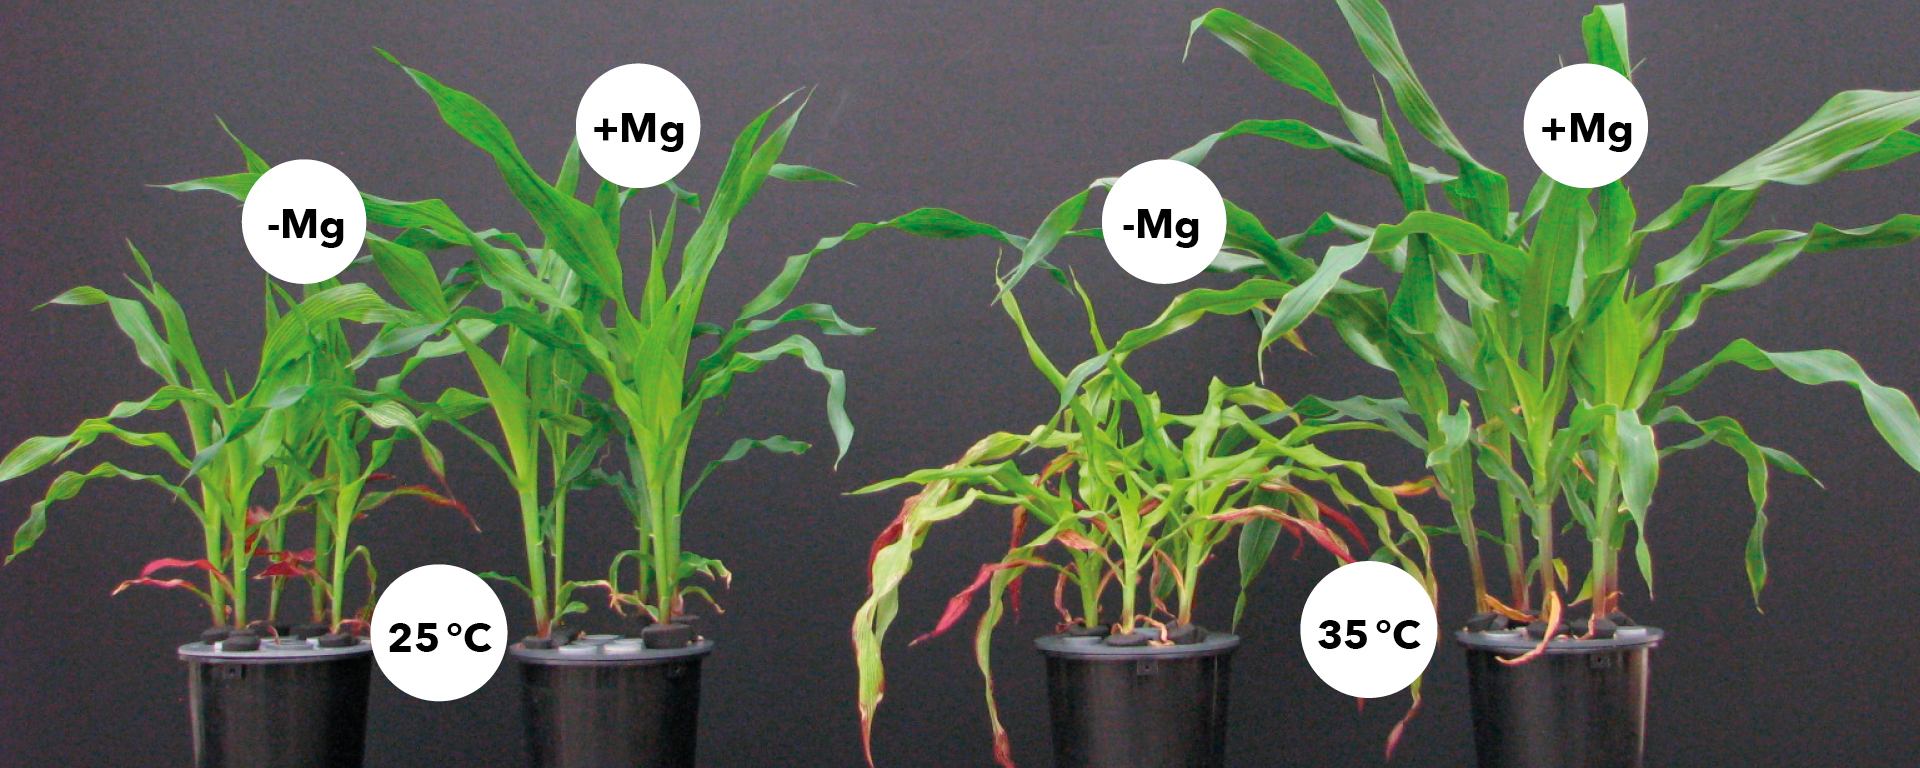 Magnesium steigert die Toleranz der Maispflanzen gegenüber hohen Temperaturen (Quelle: Mengutay et al., 2013, Plant and Soil)